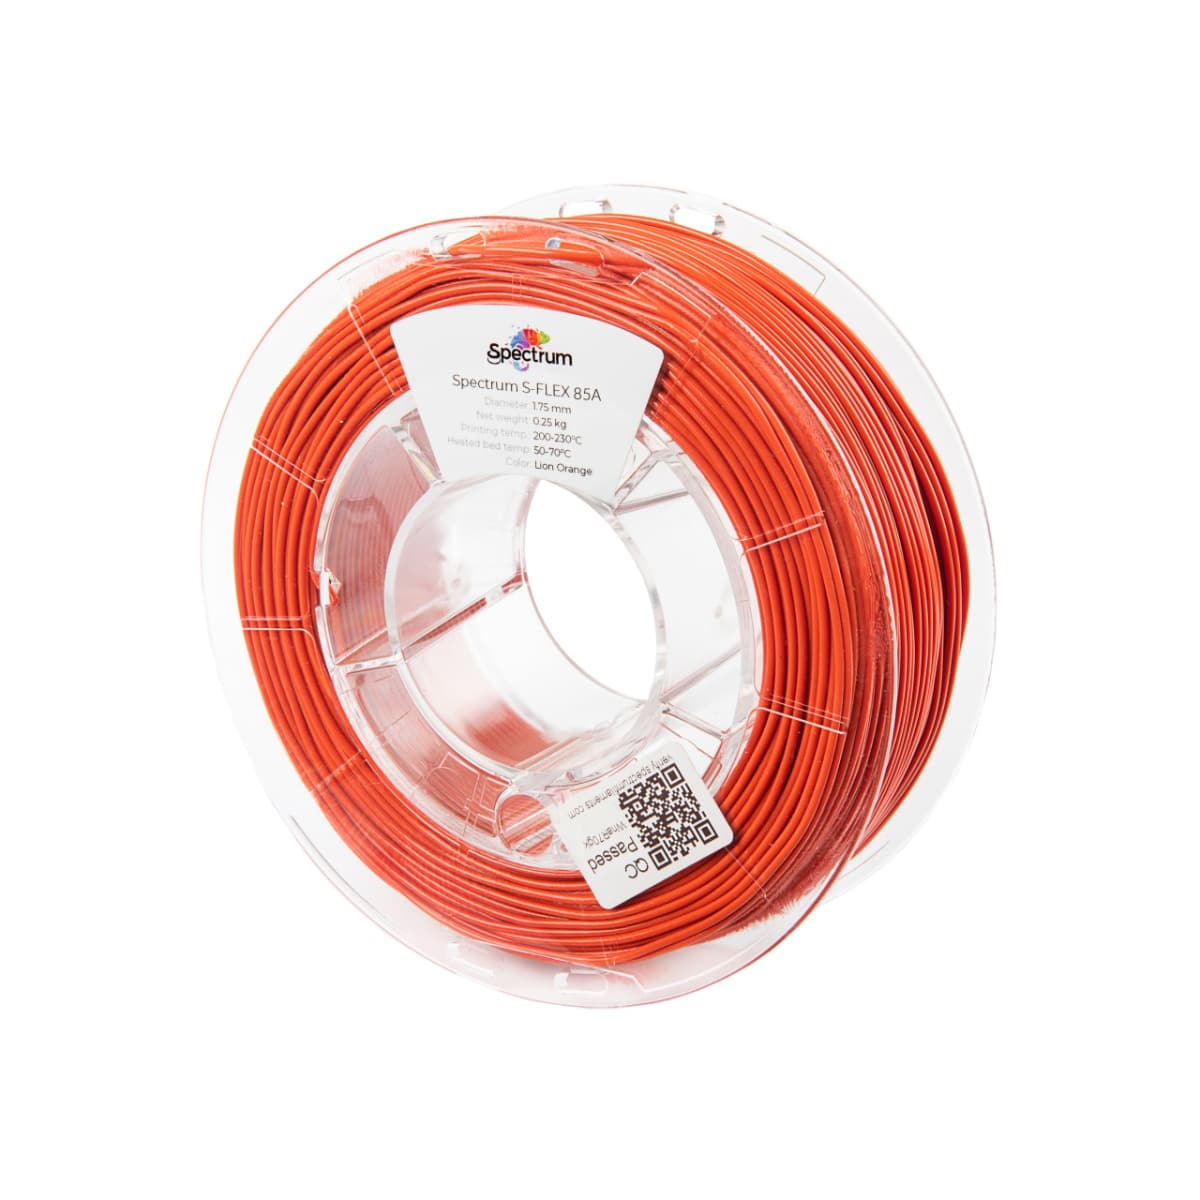 Køb Spectrum Filaments - S-Flex 85A - 1.75mm - Lion Orange - 0.25kg - Pris 140.00 kr.